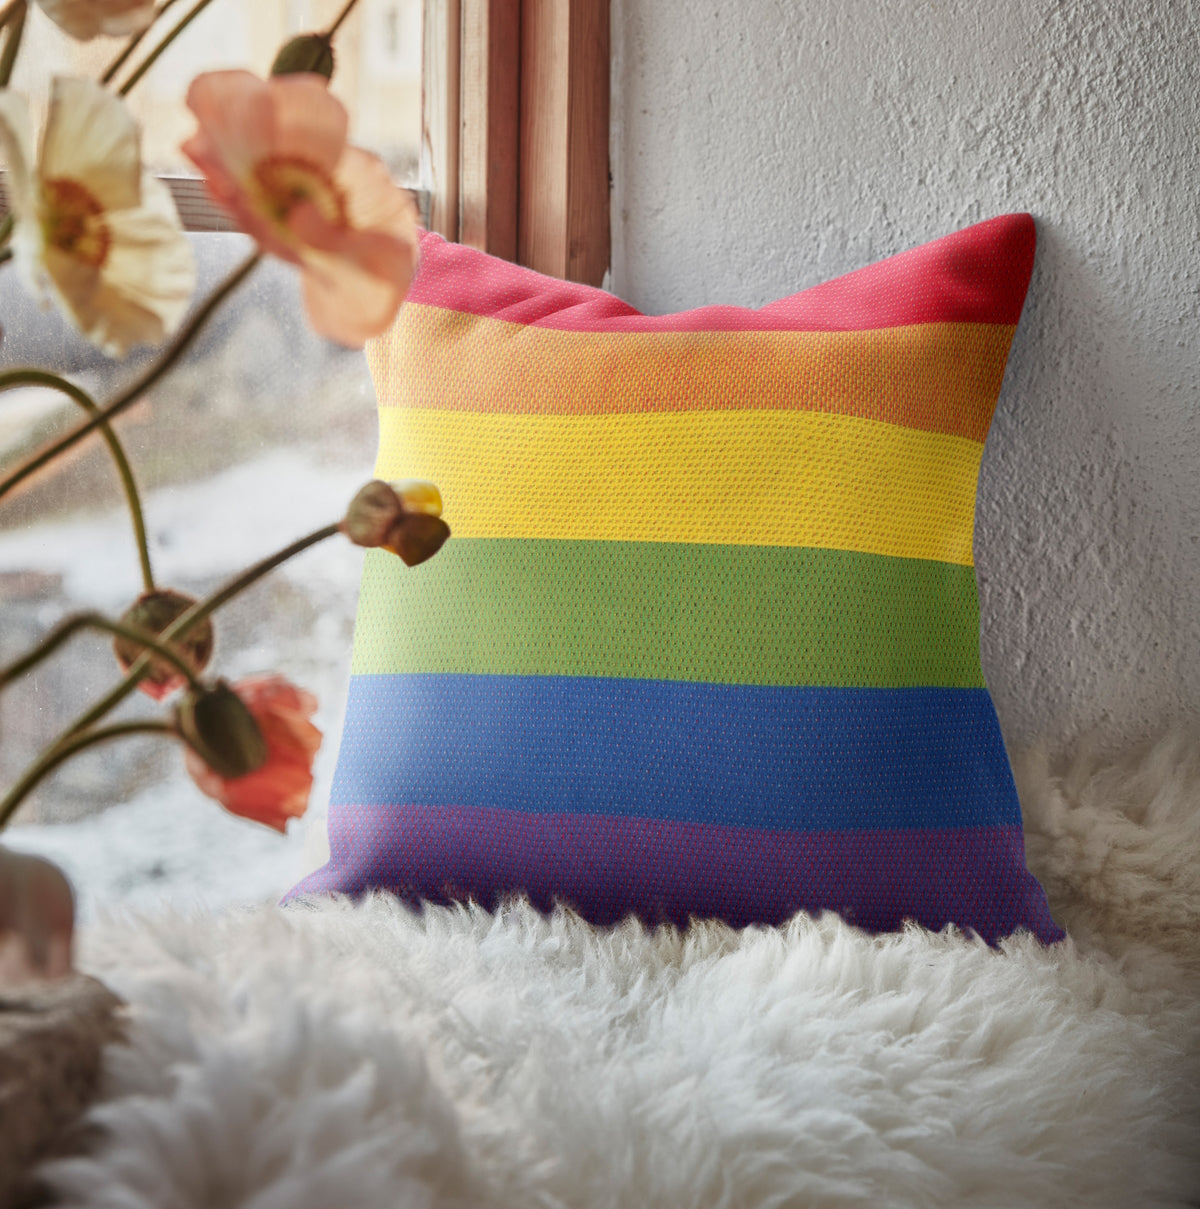 Ekelund Pride Cushion Cover 40x40